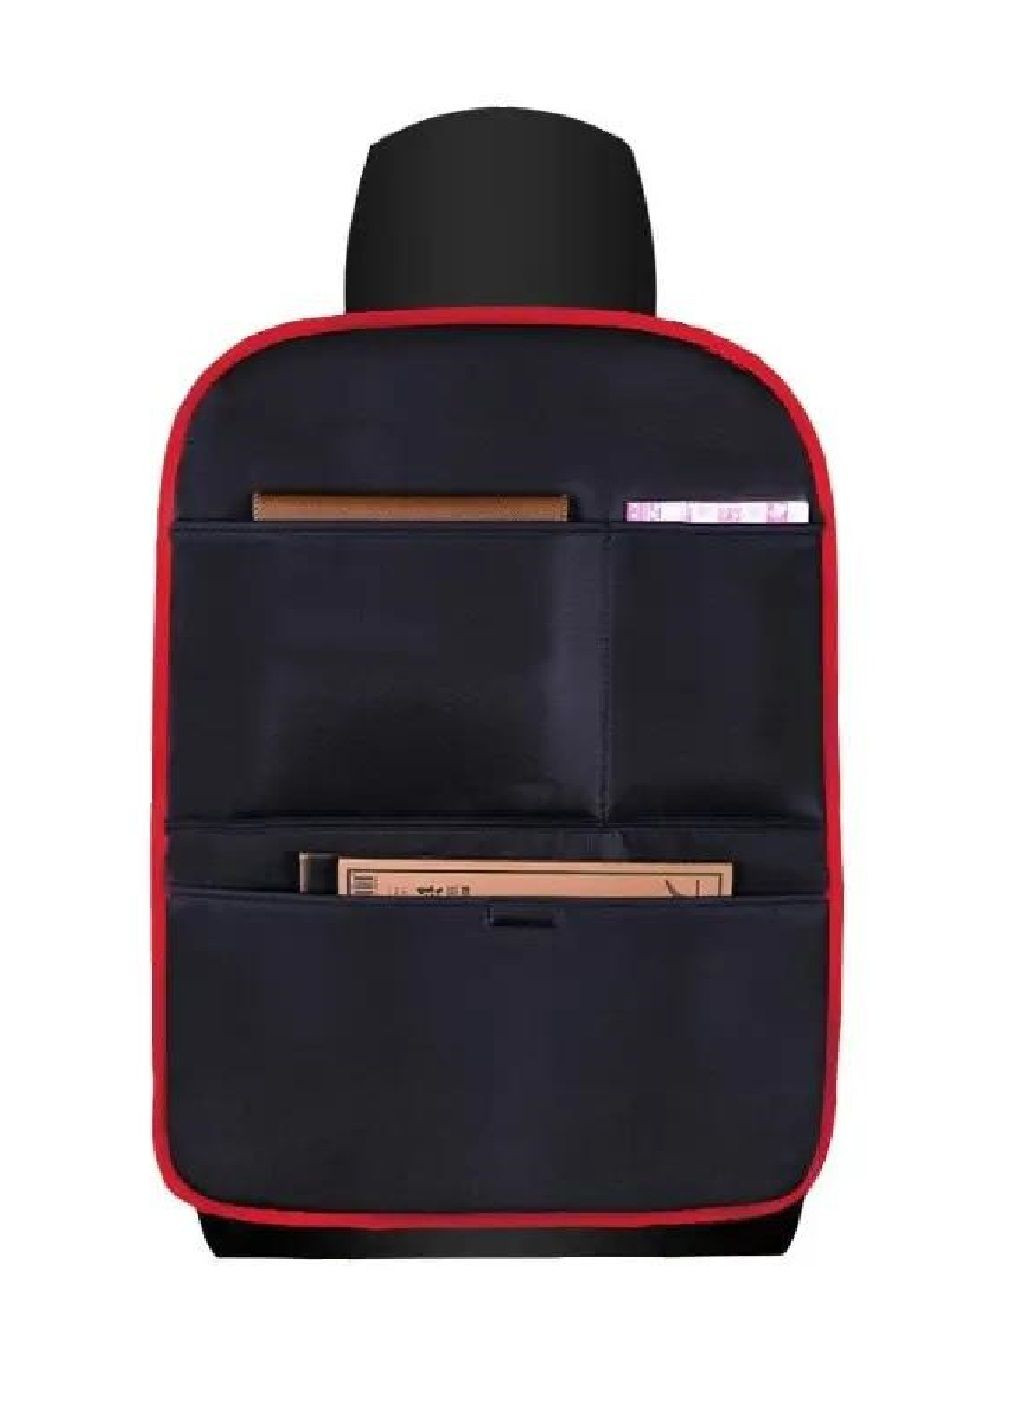 Органайзер с карманами на спинку сидения в машину салон автомобиля искусственная кожа 65х50 см (476890-Prob) Черный с красным Unbranded (292318338)